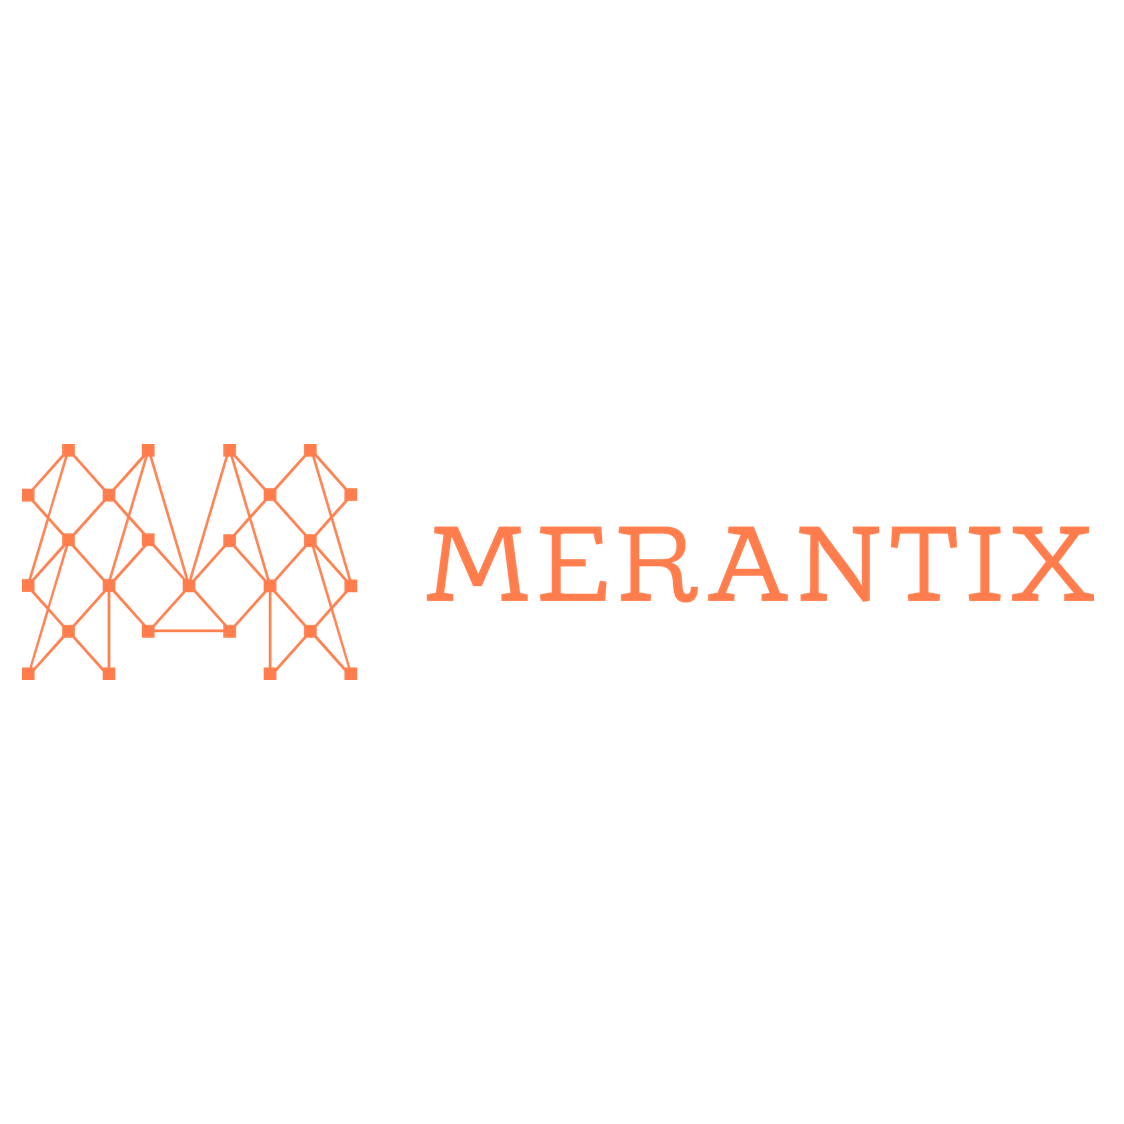 Merantix